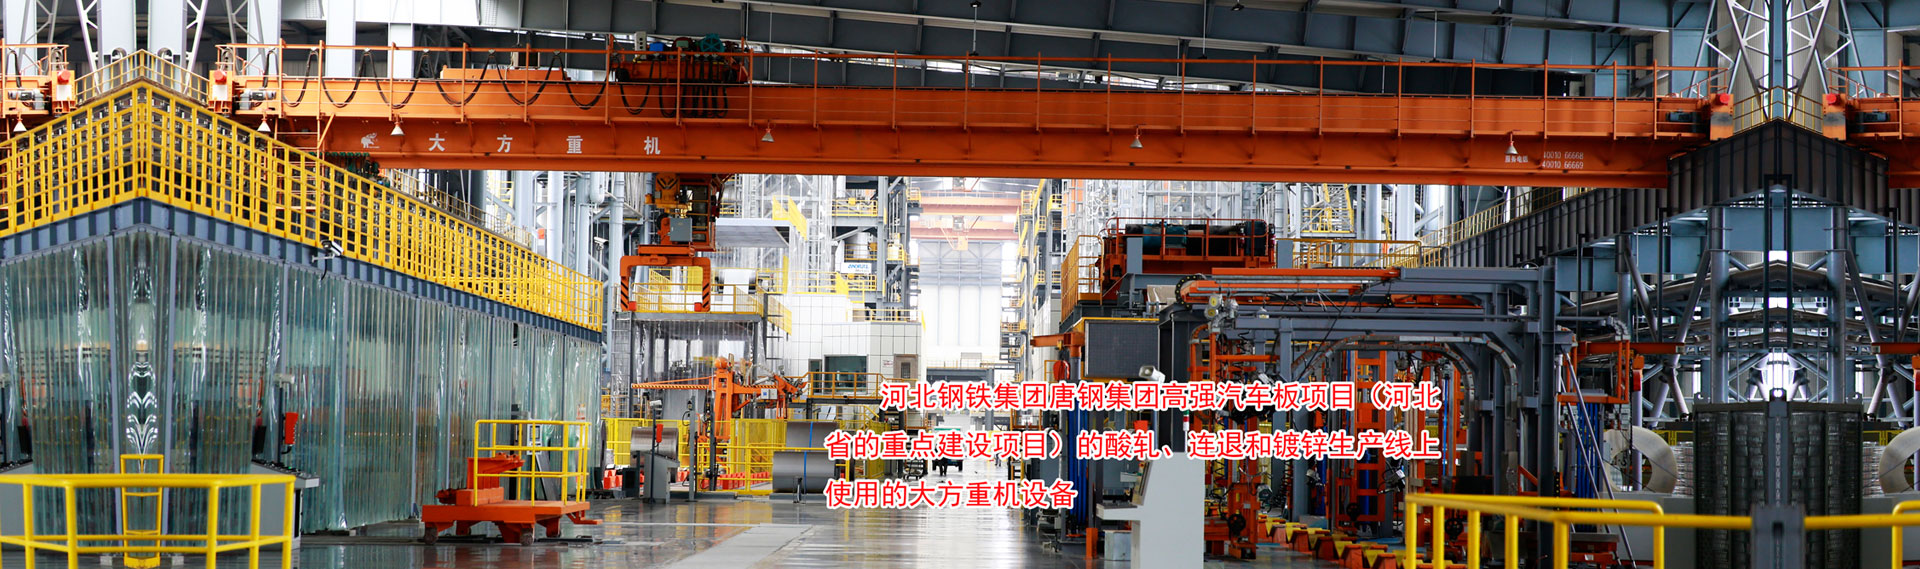 河南省大方重型机器有限公司|单、双梁起重机|门式起重机、龙门吊、防爆冶金起重机、电动葫芦